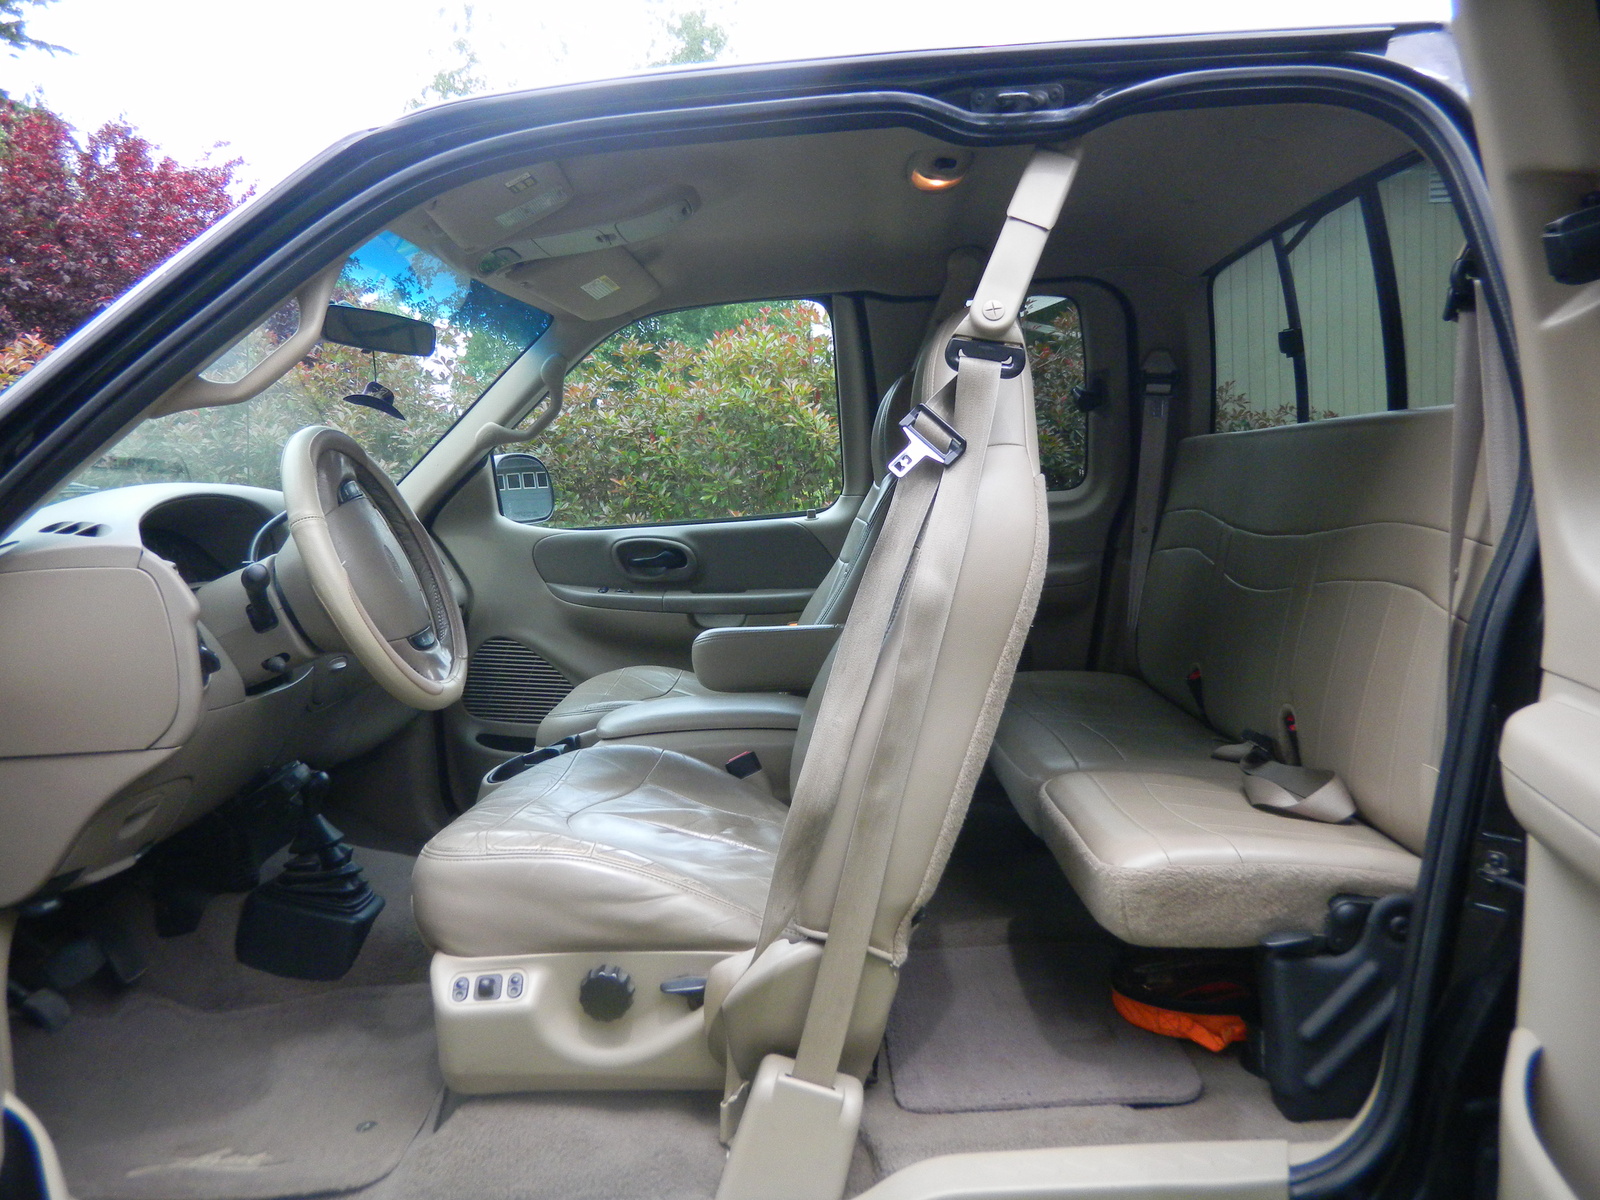 2000 Ford f150 interior #3